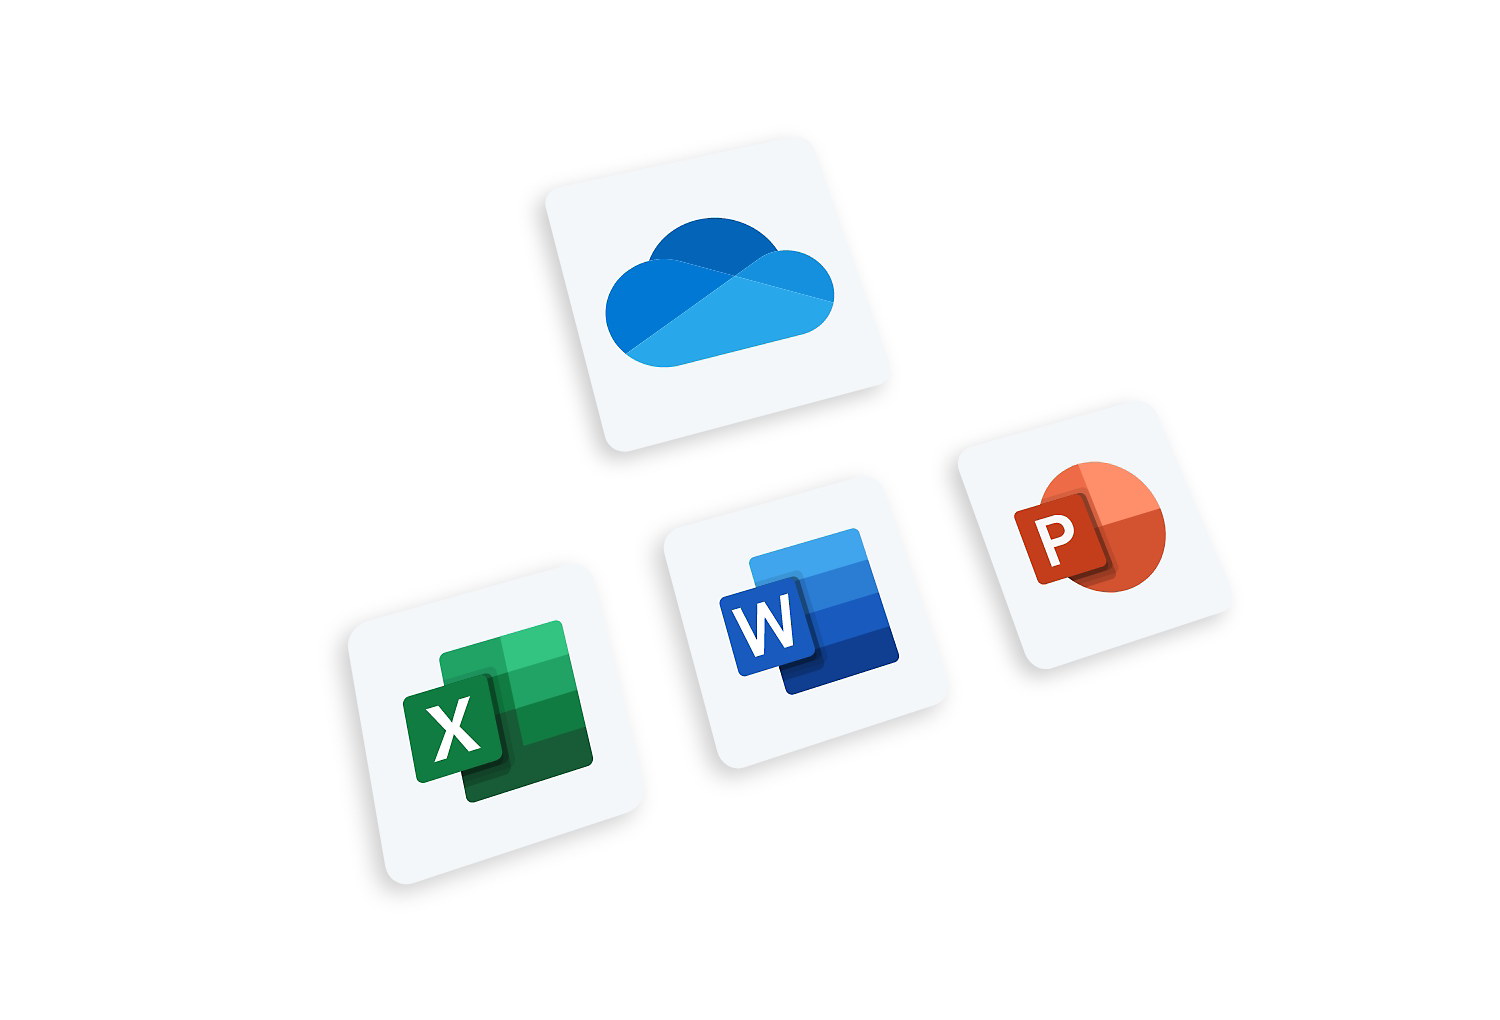 Tính năng lưu trữ đám mây cá nhân của Microsoft OneDrive là giải pháp lưu trữ độ tin cậy, đảm bảo rằng tất cả các tài liệu quan trọng của bạn sẽ được lưu trữ an toàn và có thể truy cập từ bất kỳ đâu. Tìm hiểu thêm về OneDrive và cách nó có thể giúp bạn trong video này!